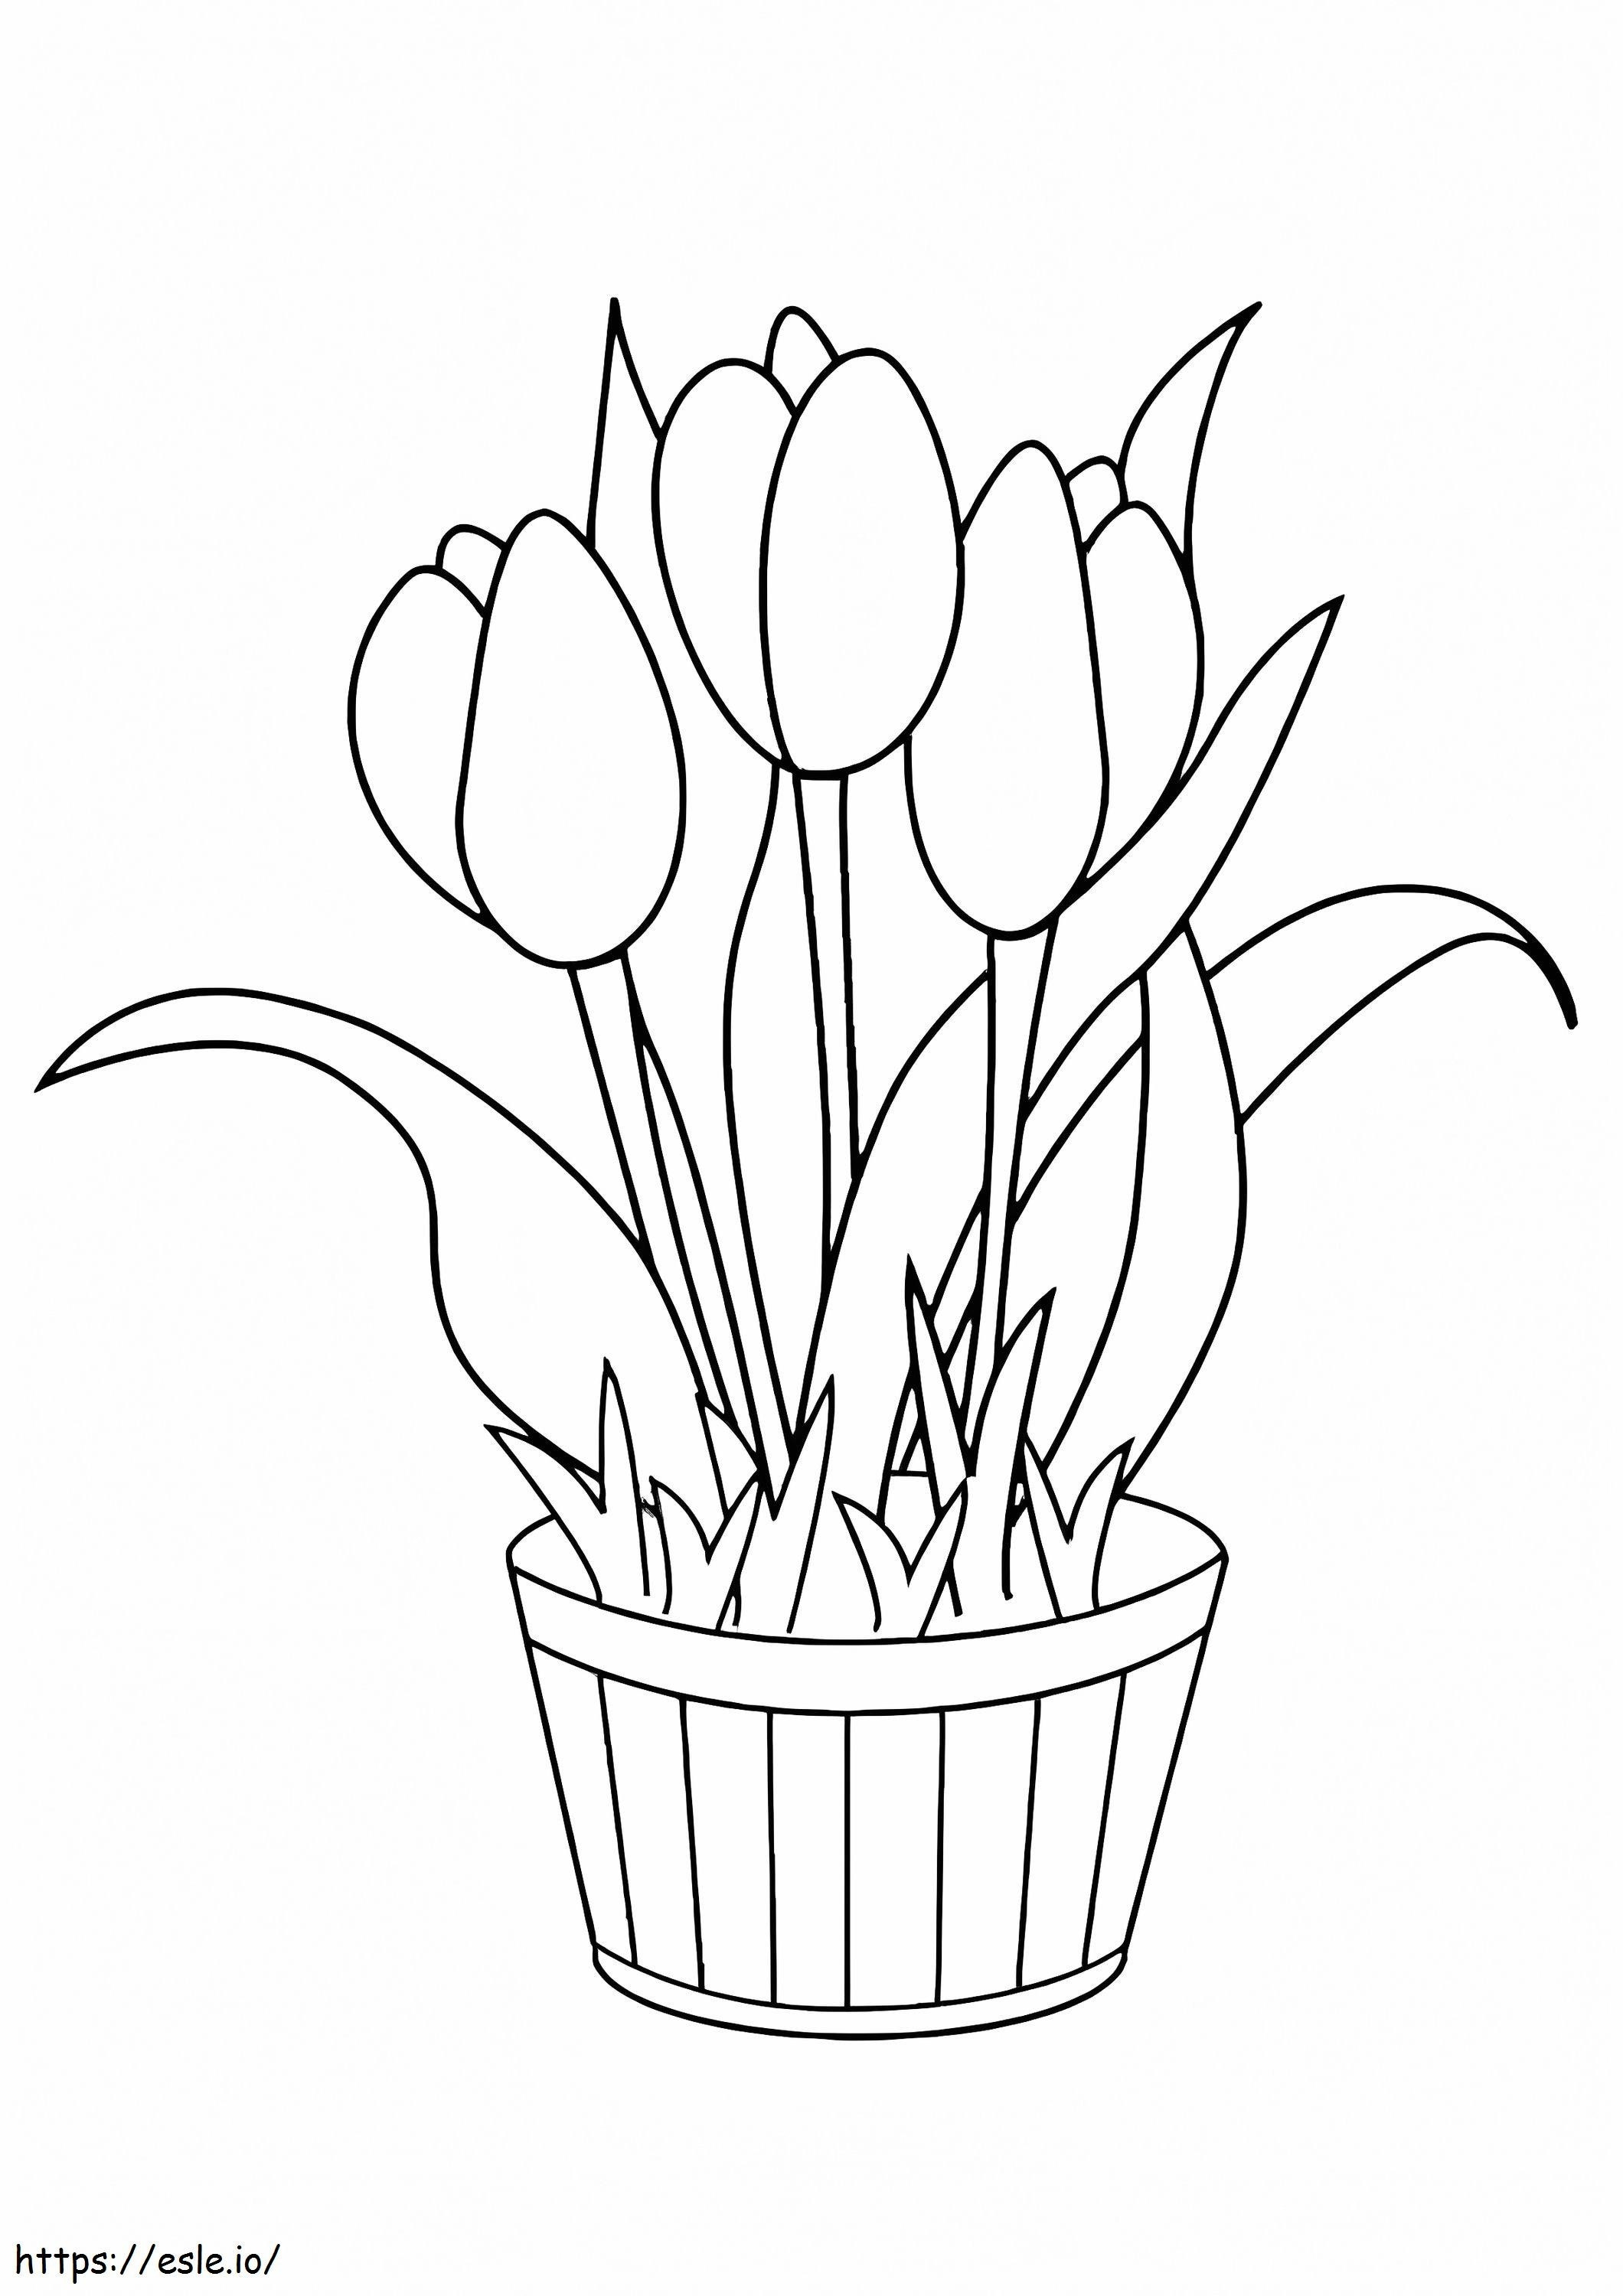 Coloriage Tulipes Pot De Fleur à imprimer dessin